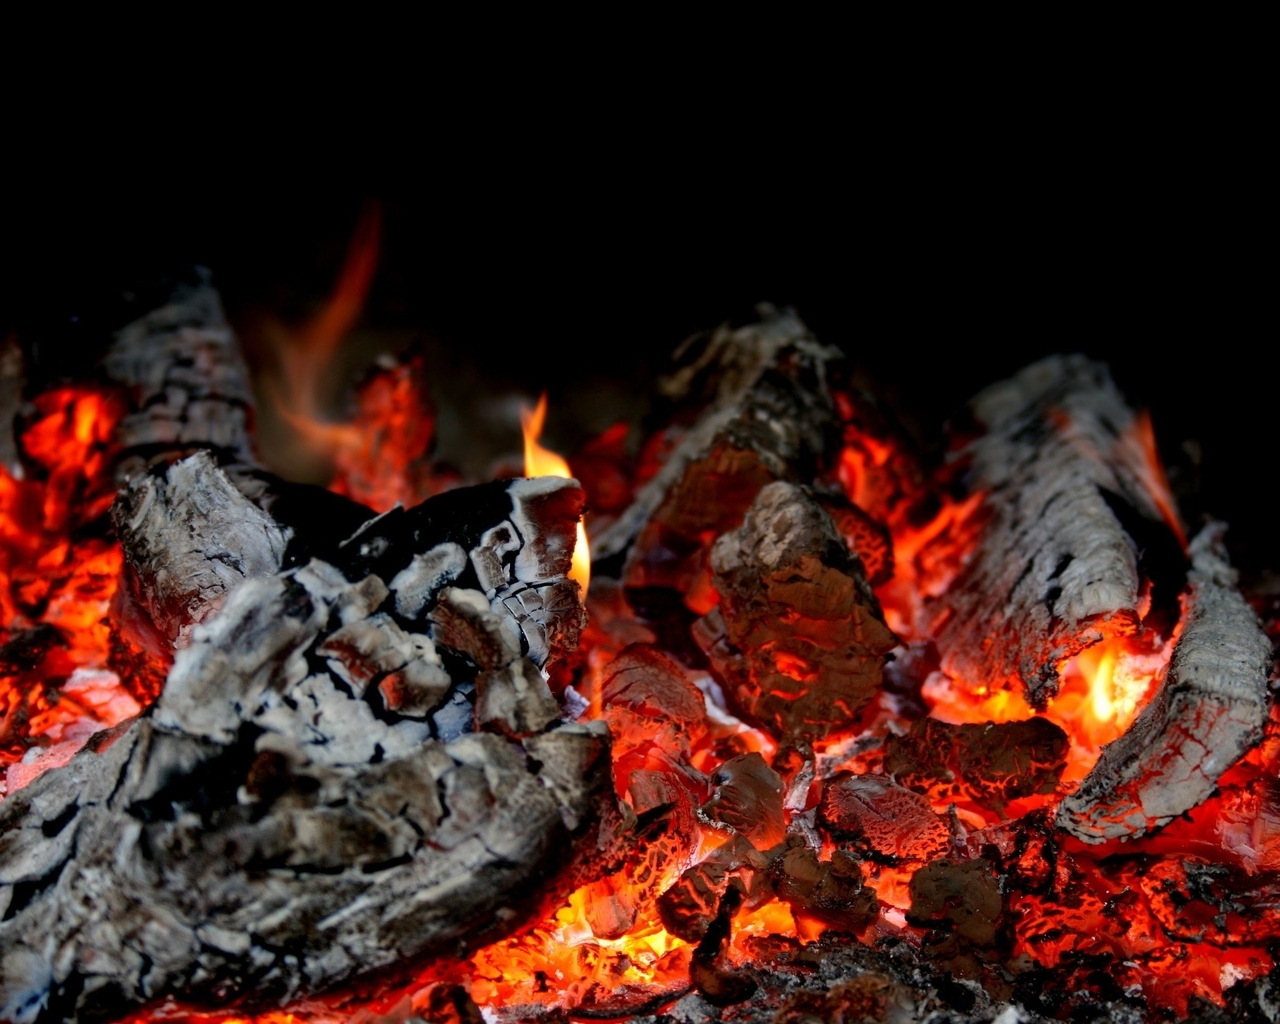 Картинка: Уголь, огонь, тепло, тёмный фон